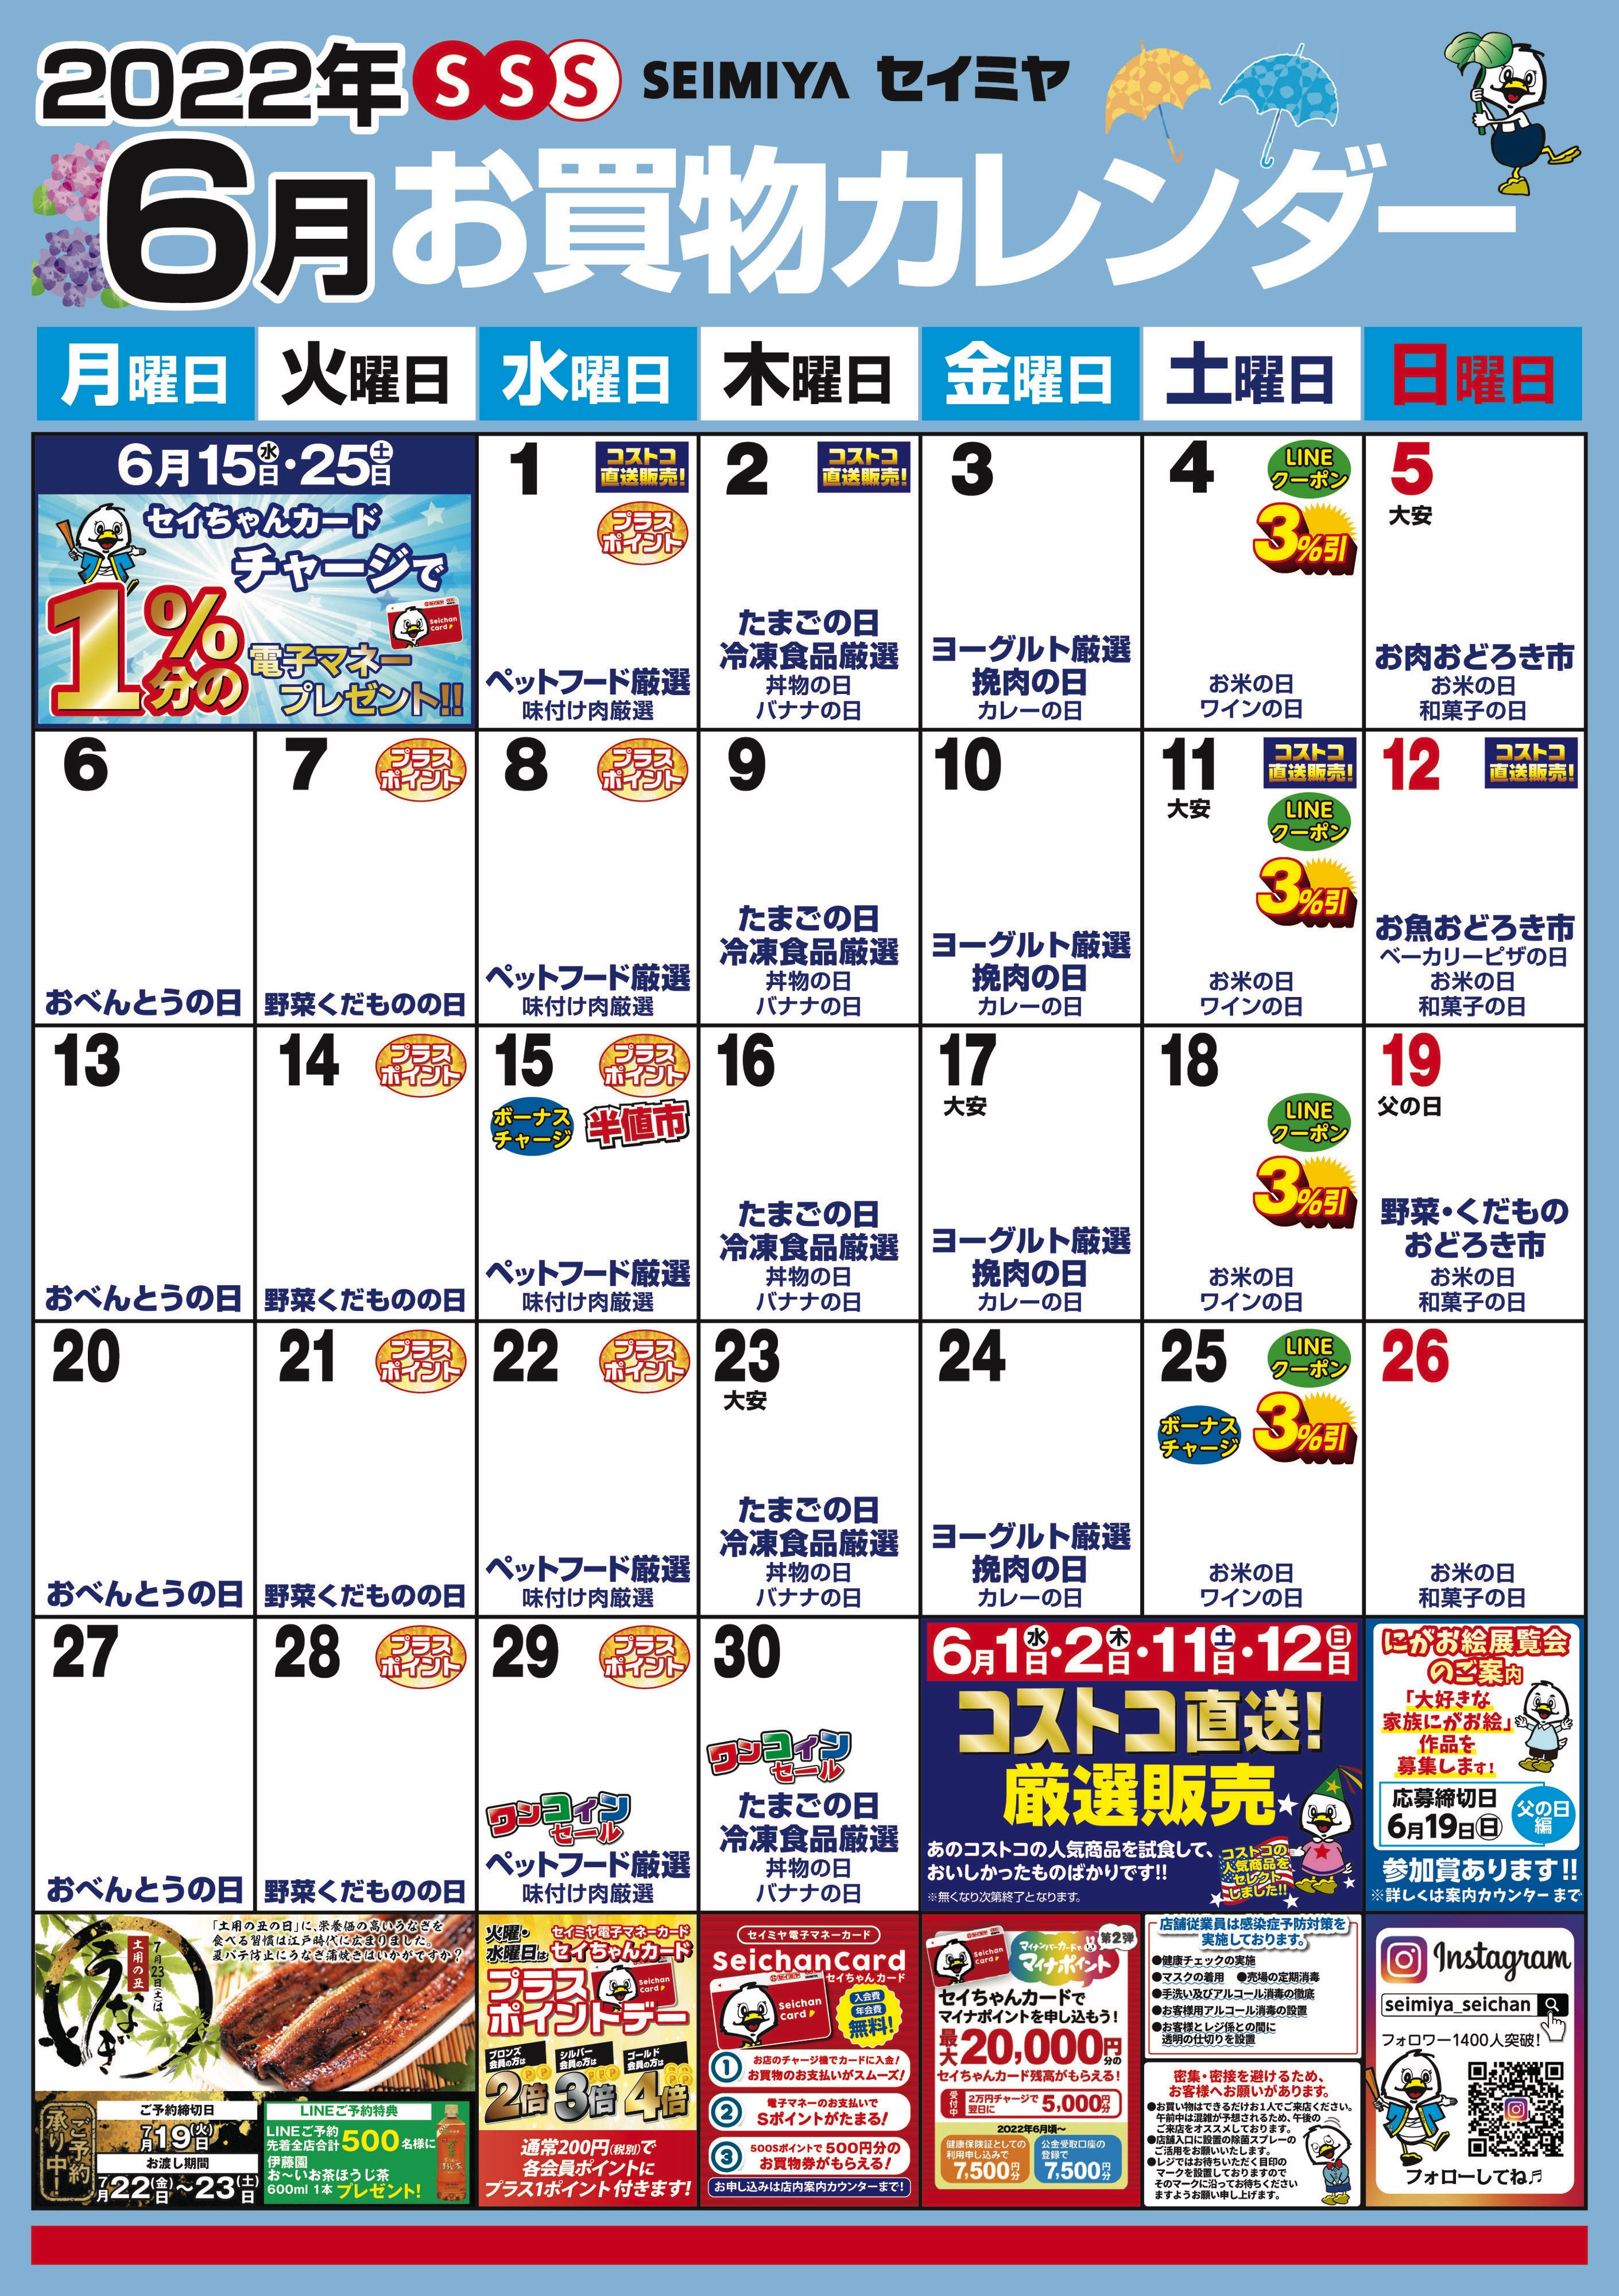 6月のお買物カレンダー